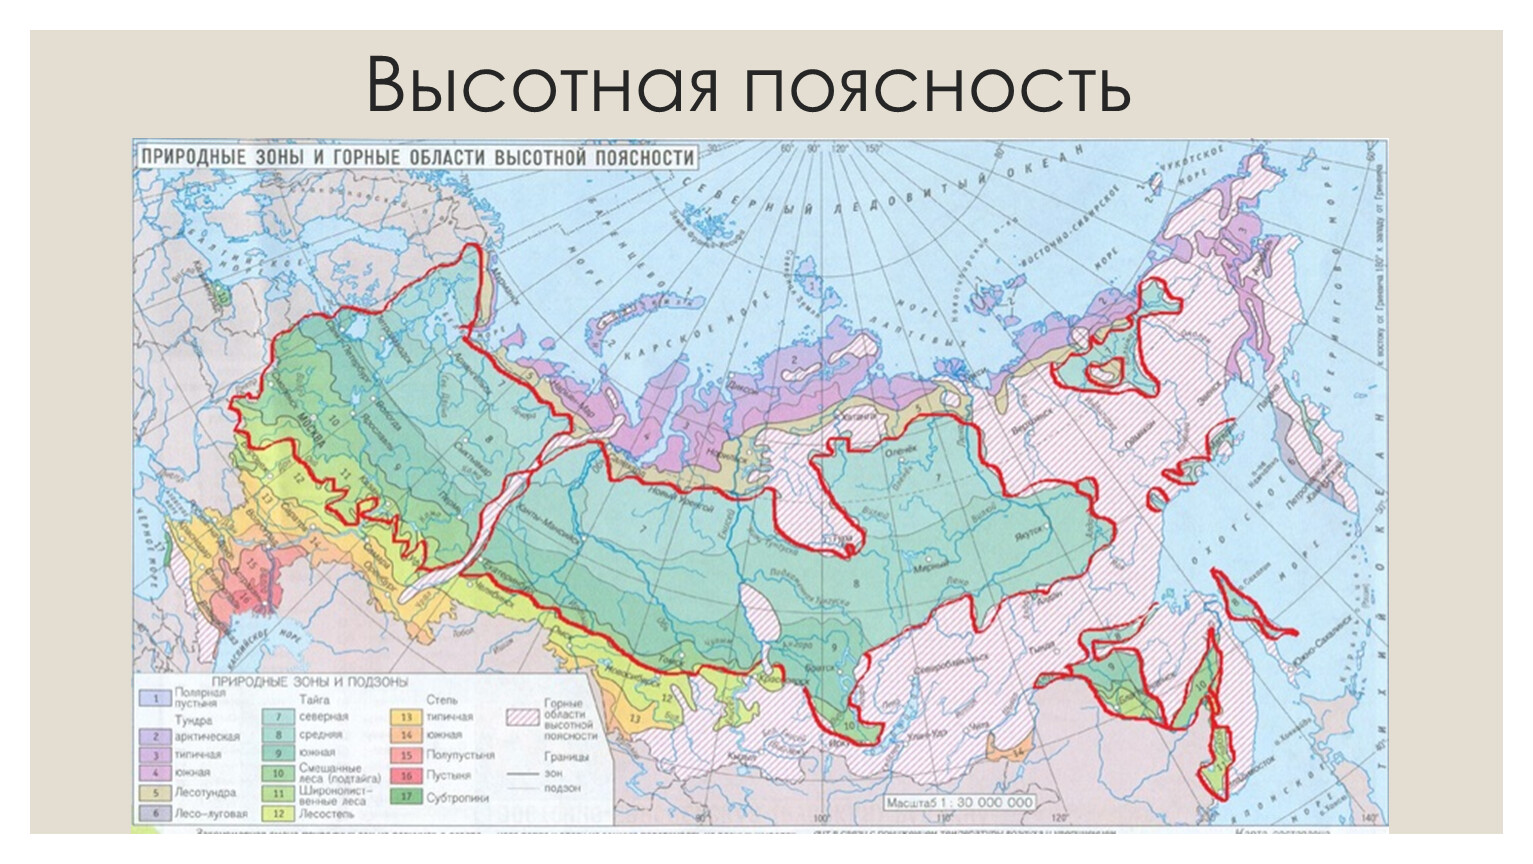 Карта природных зон России области ВЫСОТНОЙ поясности